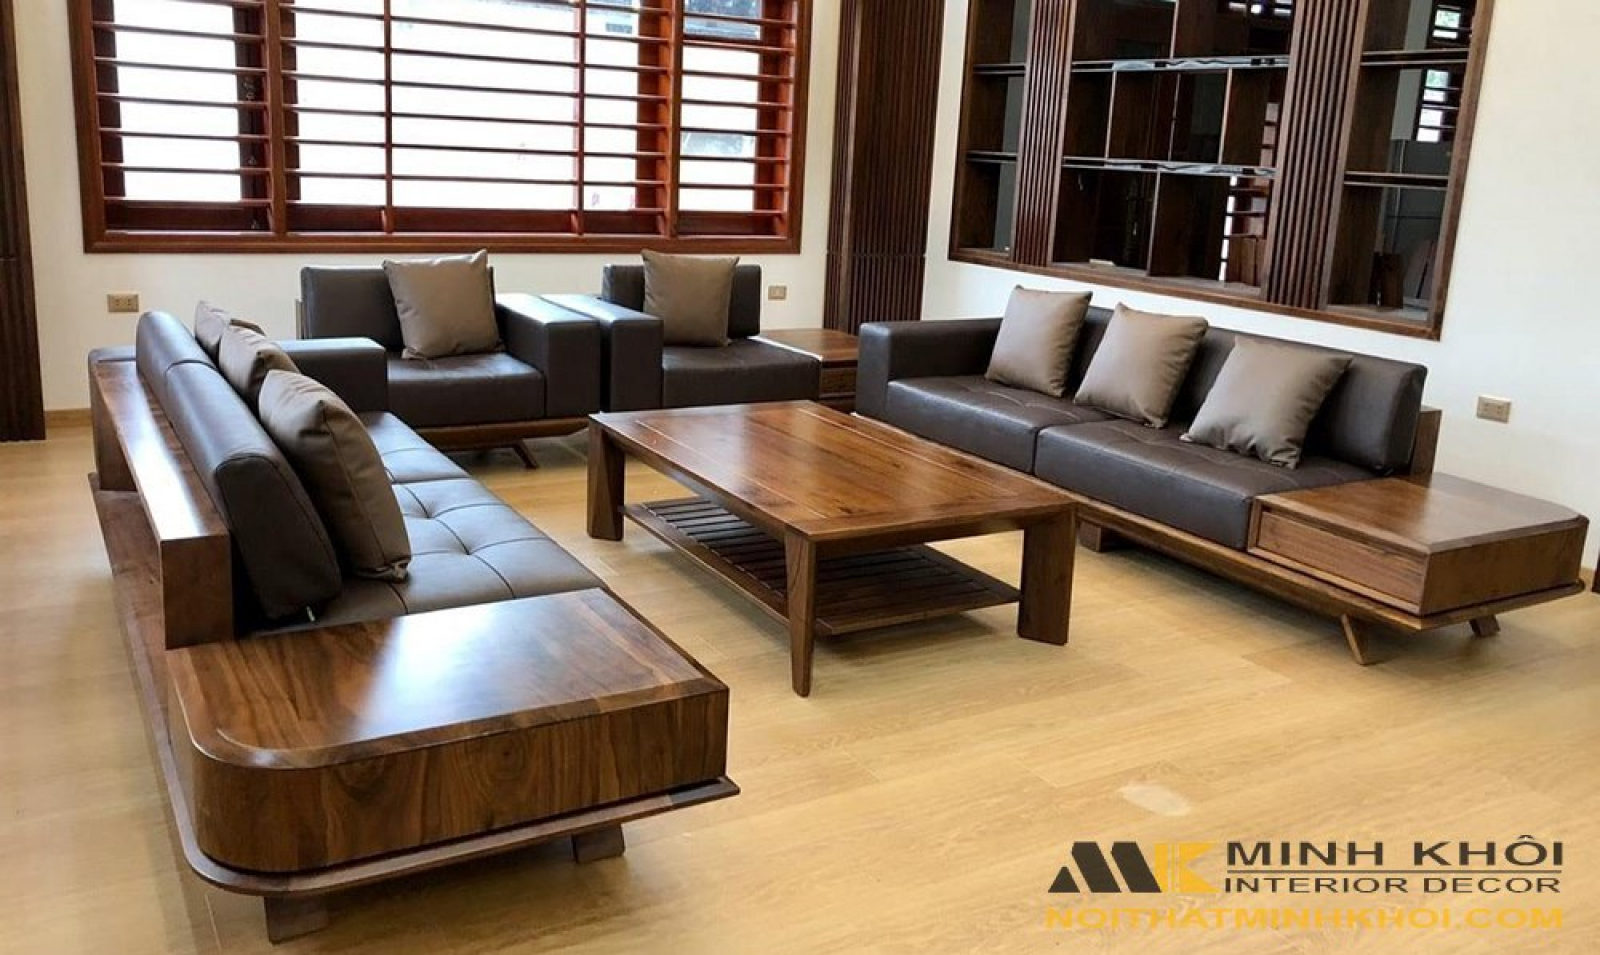 Bàn ghế Sofa gỗ sồi đa dạng - Với 10 mẫu bàn ghế Sofa gỗ sồi Nga đẹp và thông dụng hiện nay, bạn sẽ dễ dàng lựa chọn được những sản phẩm phù hợp với phong cách và nhu cầu sử dụng của mình. Với chất liệu gỗ sồi tự nhiên, sản phẩm không chỉ đảm bảo độ bền mà còn mang lại vẻ đẹp độc đáo cho không gian sống của bạn.